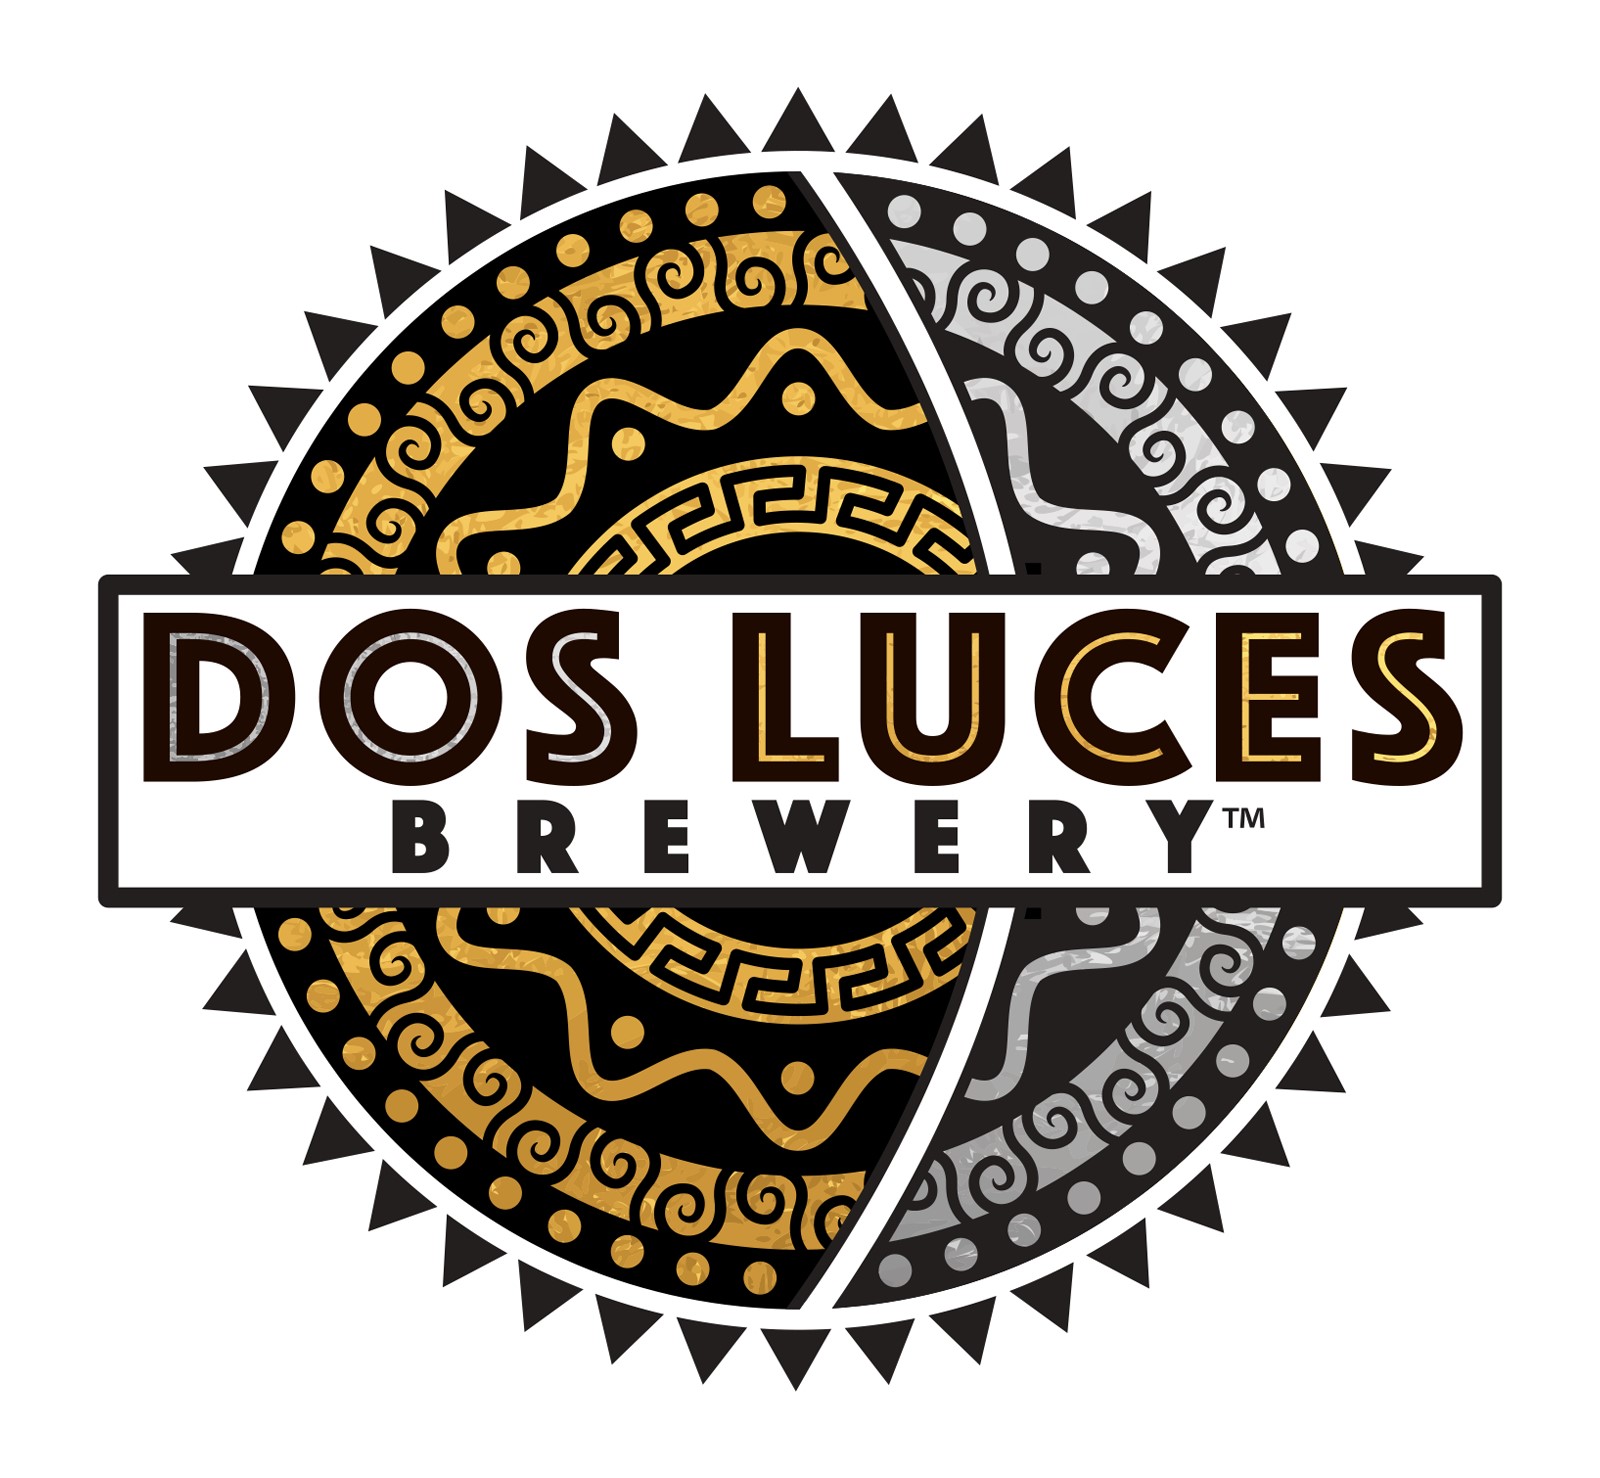 Dos Luces Brewery logo.